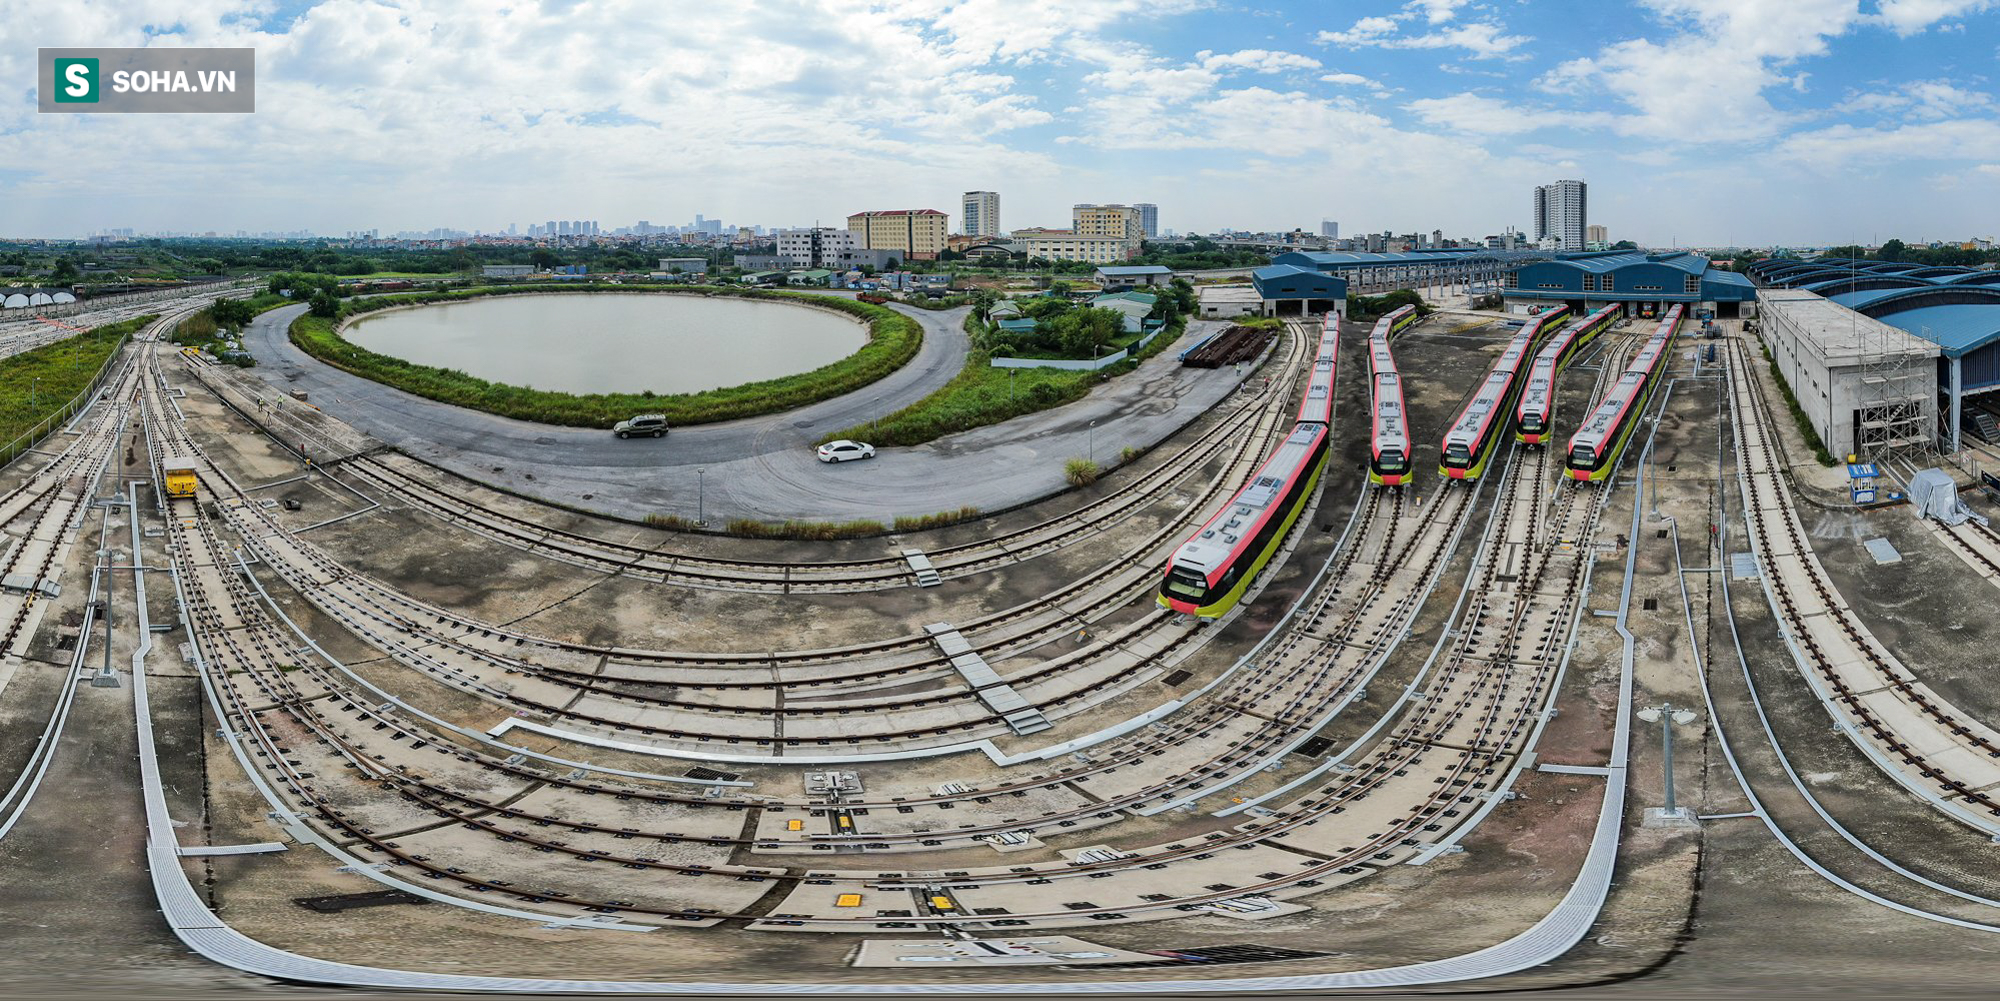 Xây trước tuyến Cát Linh-Hà Đông 1 năm, dự án Metro Nhổn-Ga Hà Nội vẫn chưa xong mặt bằng - Ảnh 12.